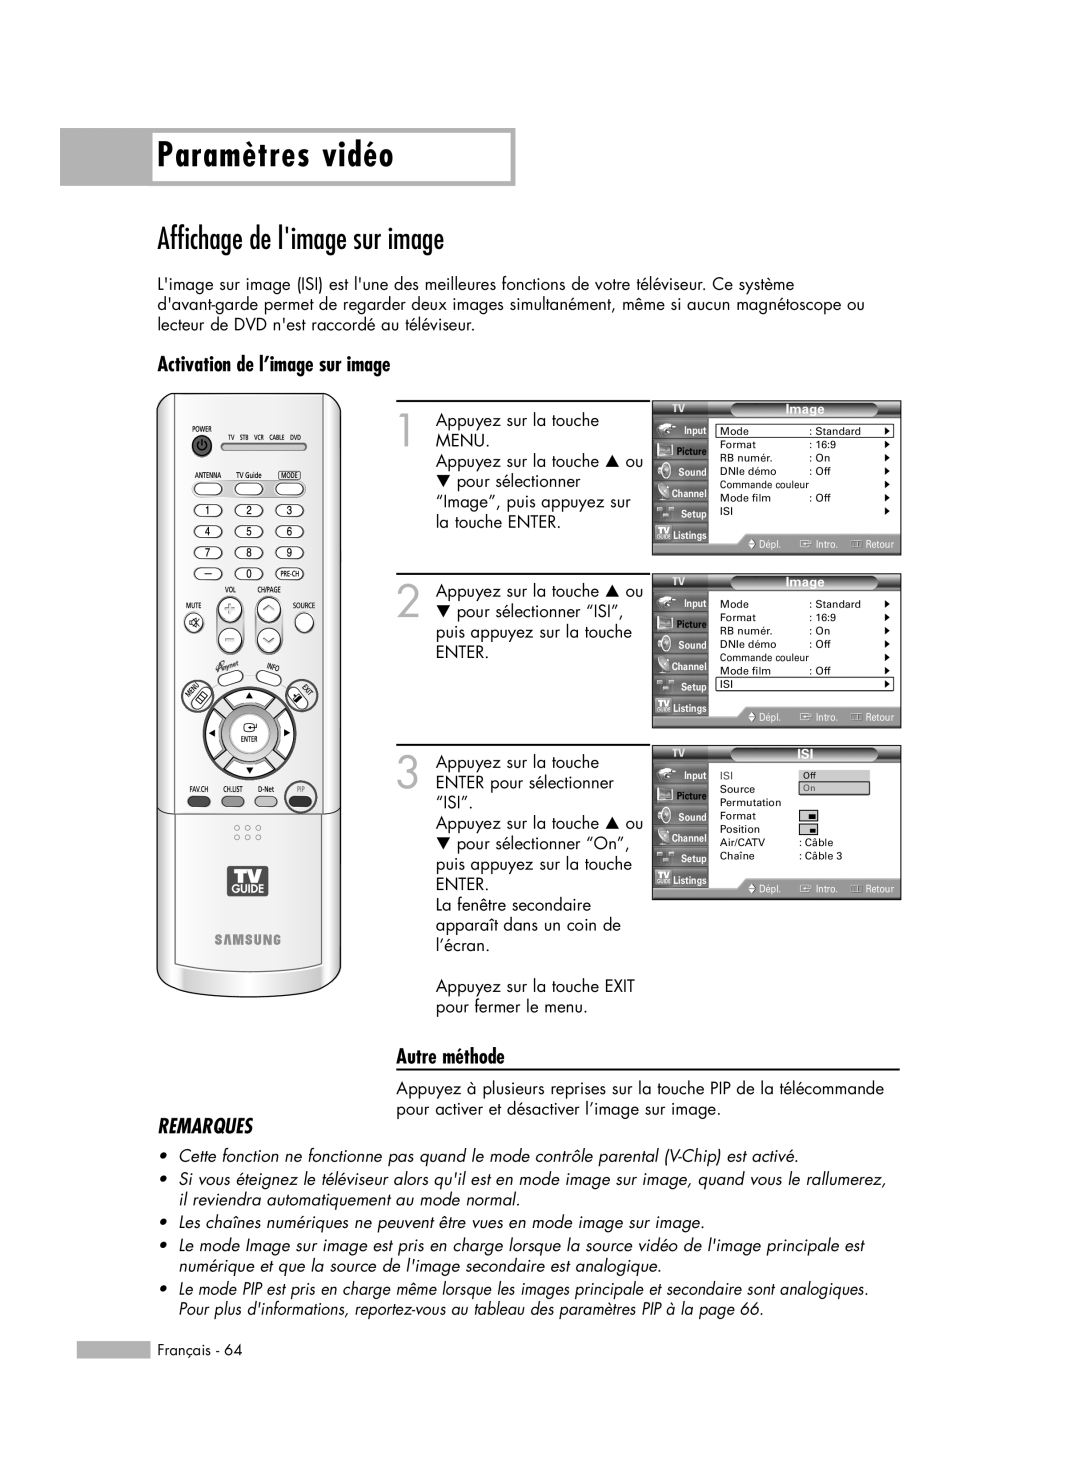 Samsung HL-R6178W manual Affichage de limage sur image, Activation de l’image sur image, Paramètres vidéo, Autre méthode 